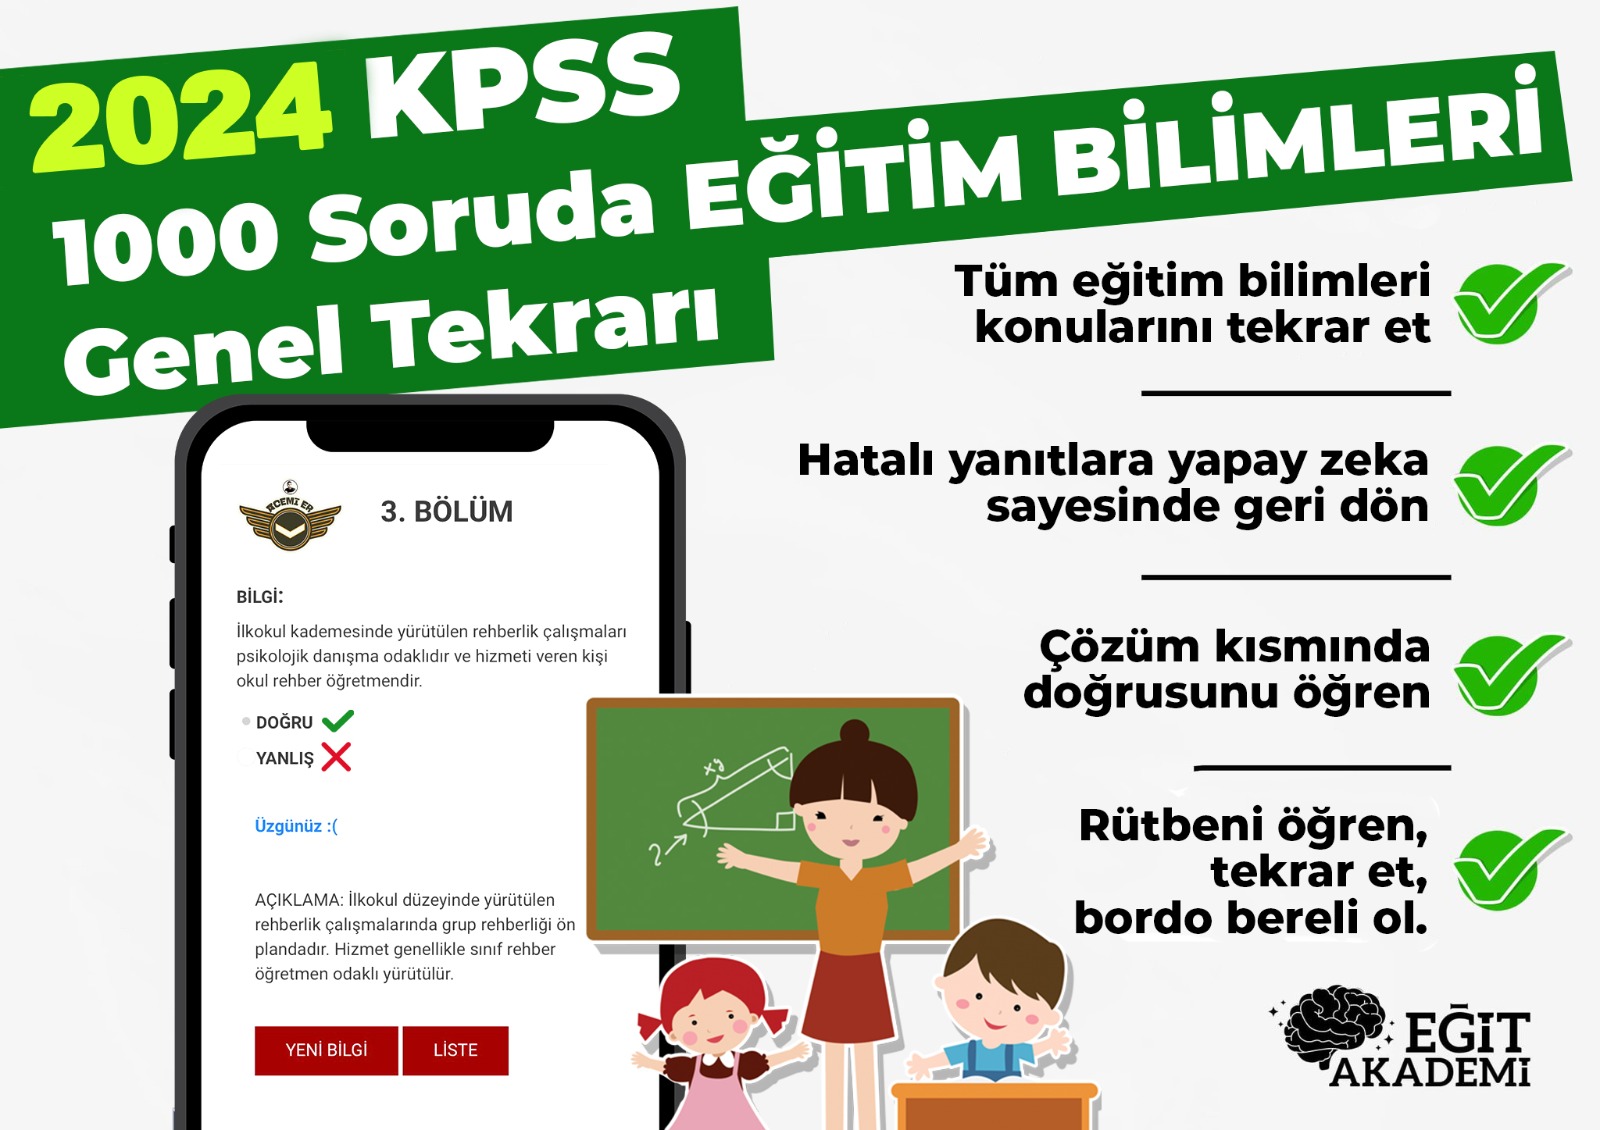 KPSS EĞİTİM BİLİMLERİ 1000 SORUDA GENEL TEKRAR PAKETİ